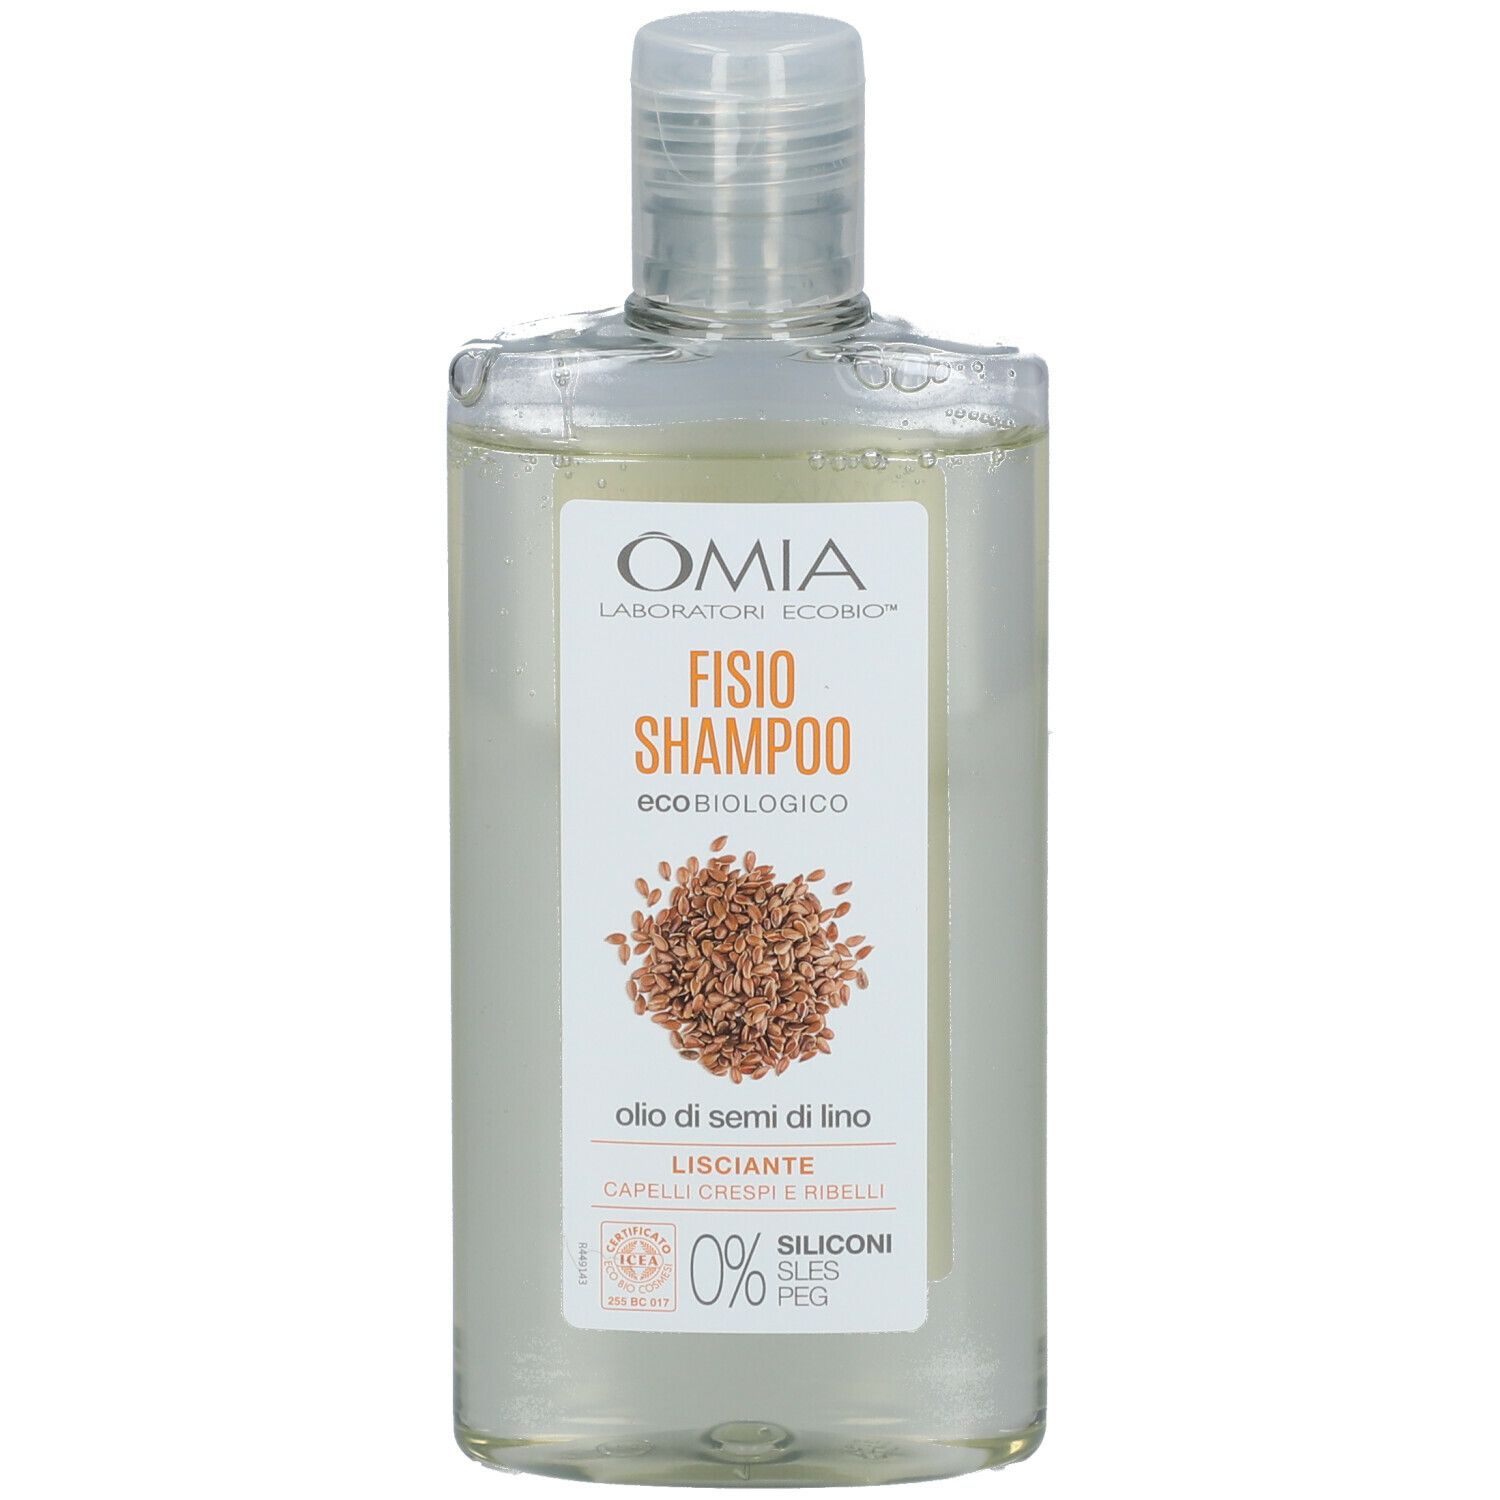 Omia Shampoo Semi di Lino Ecobio